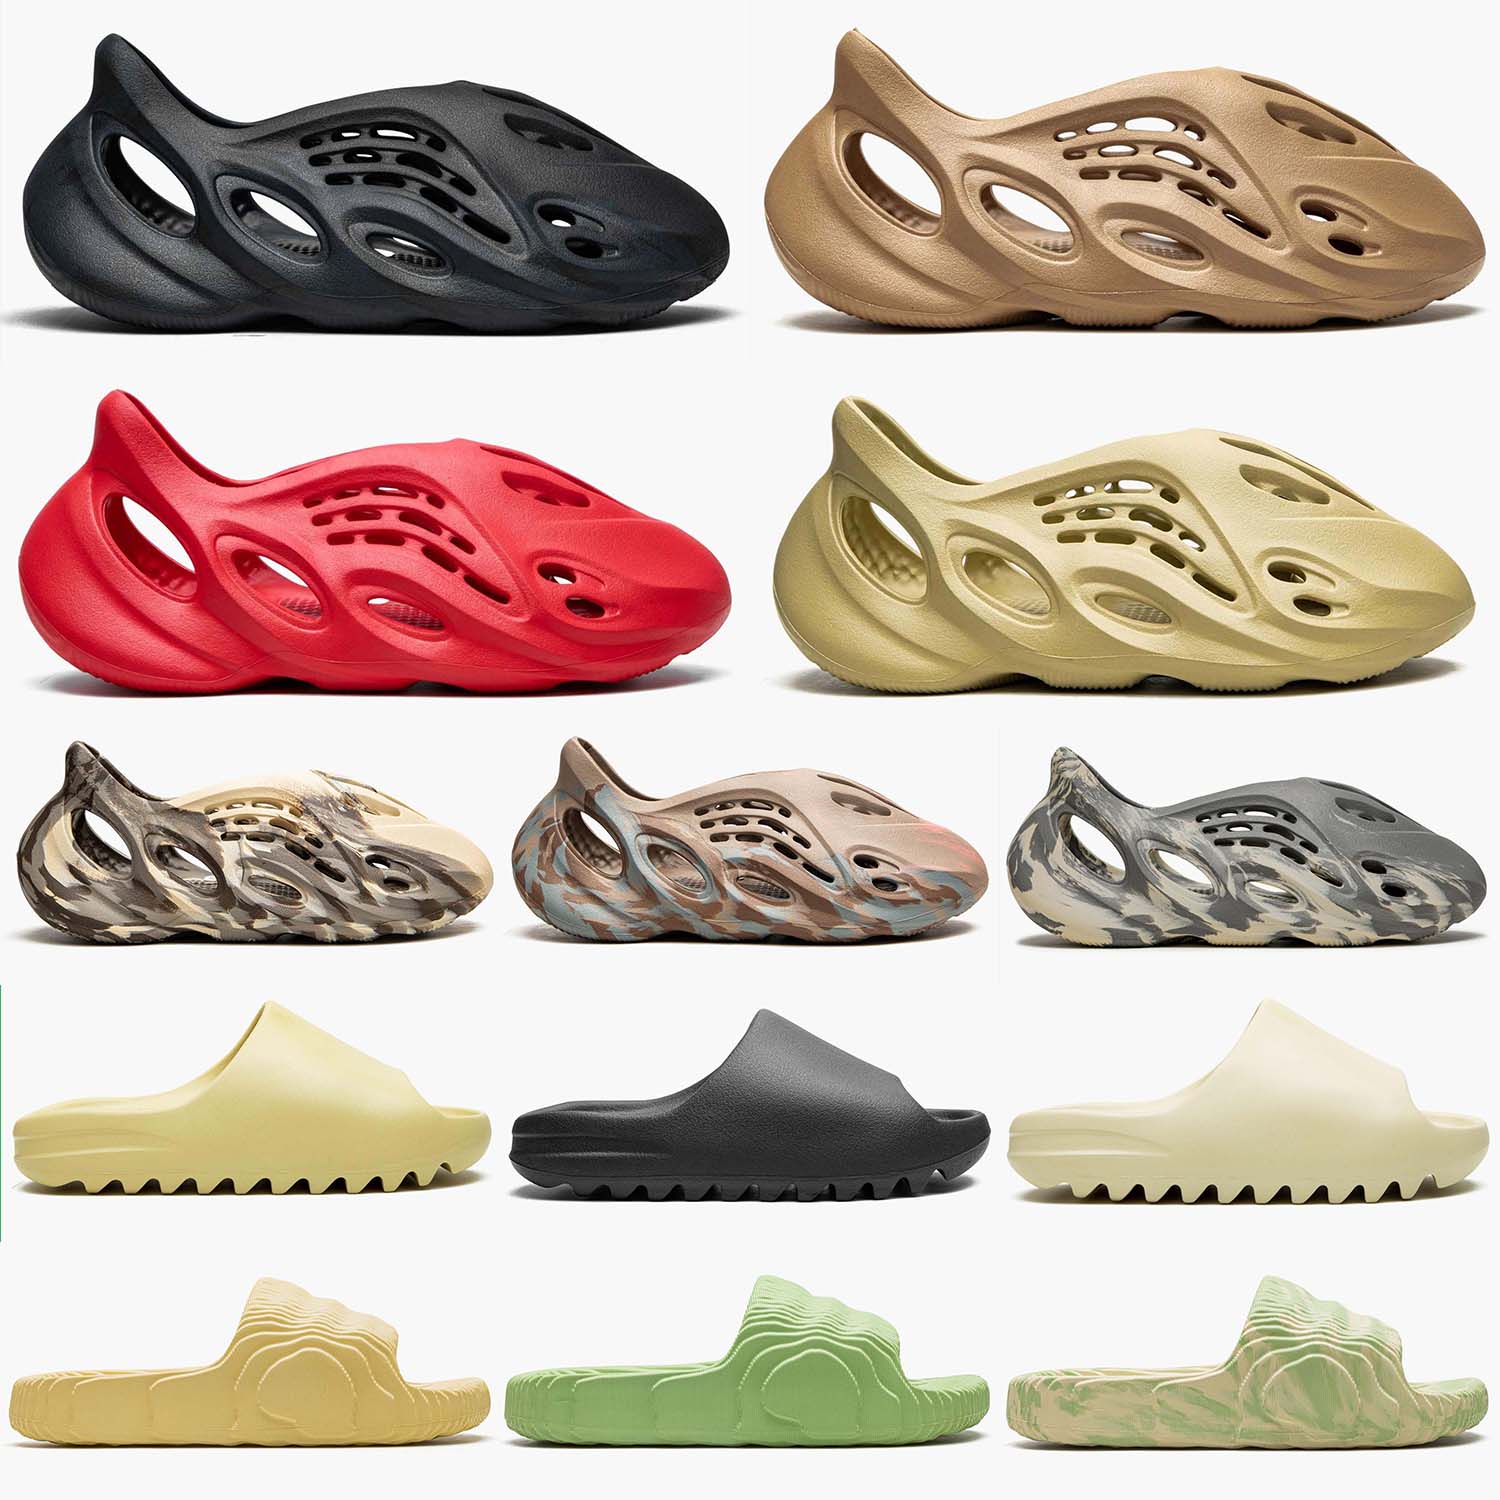 

slides foam runner Designer slipper men women Sandals Triple Black White Resin pattern slippers men womens slide slider slipper sliders quality MX Carbon, #5